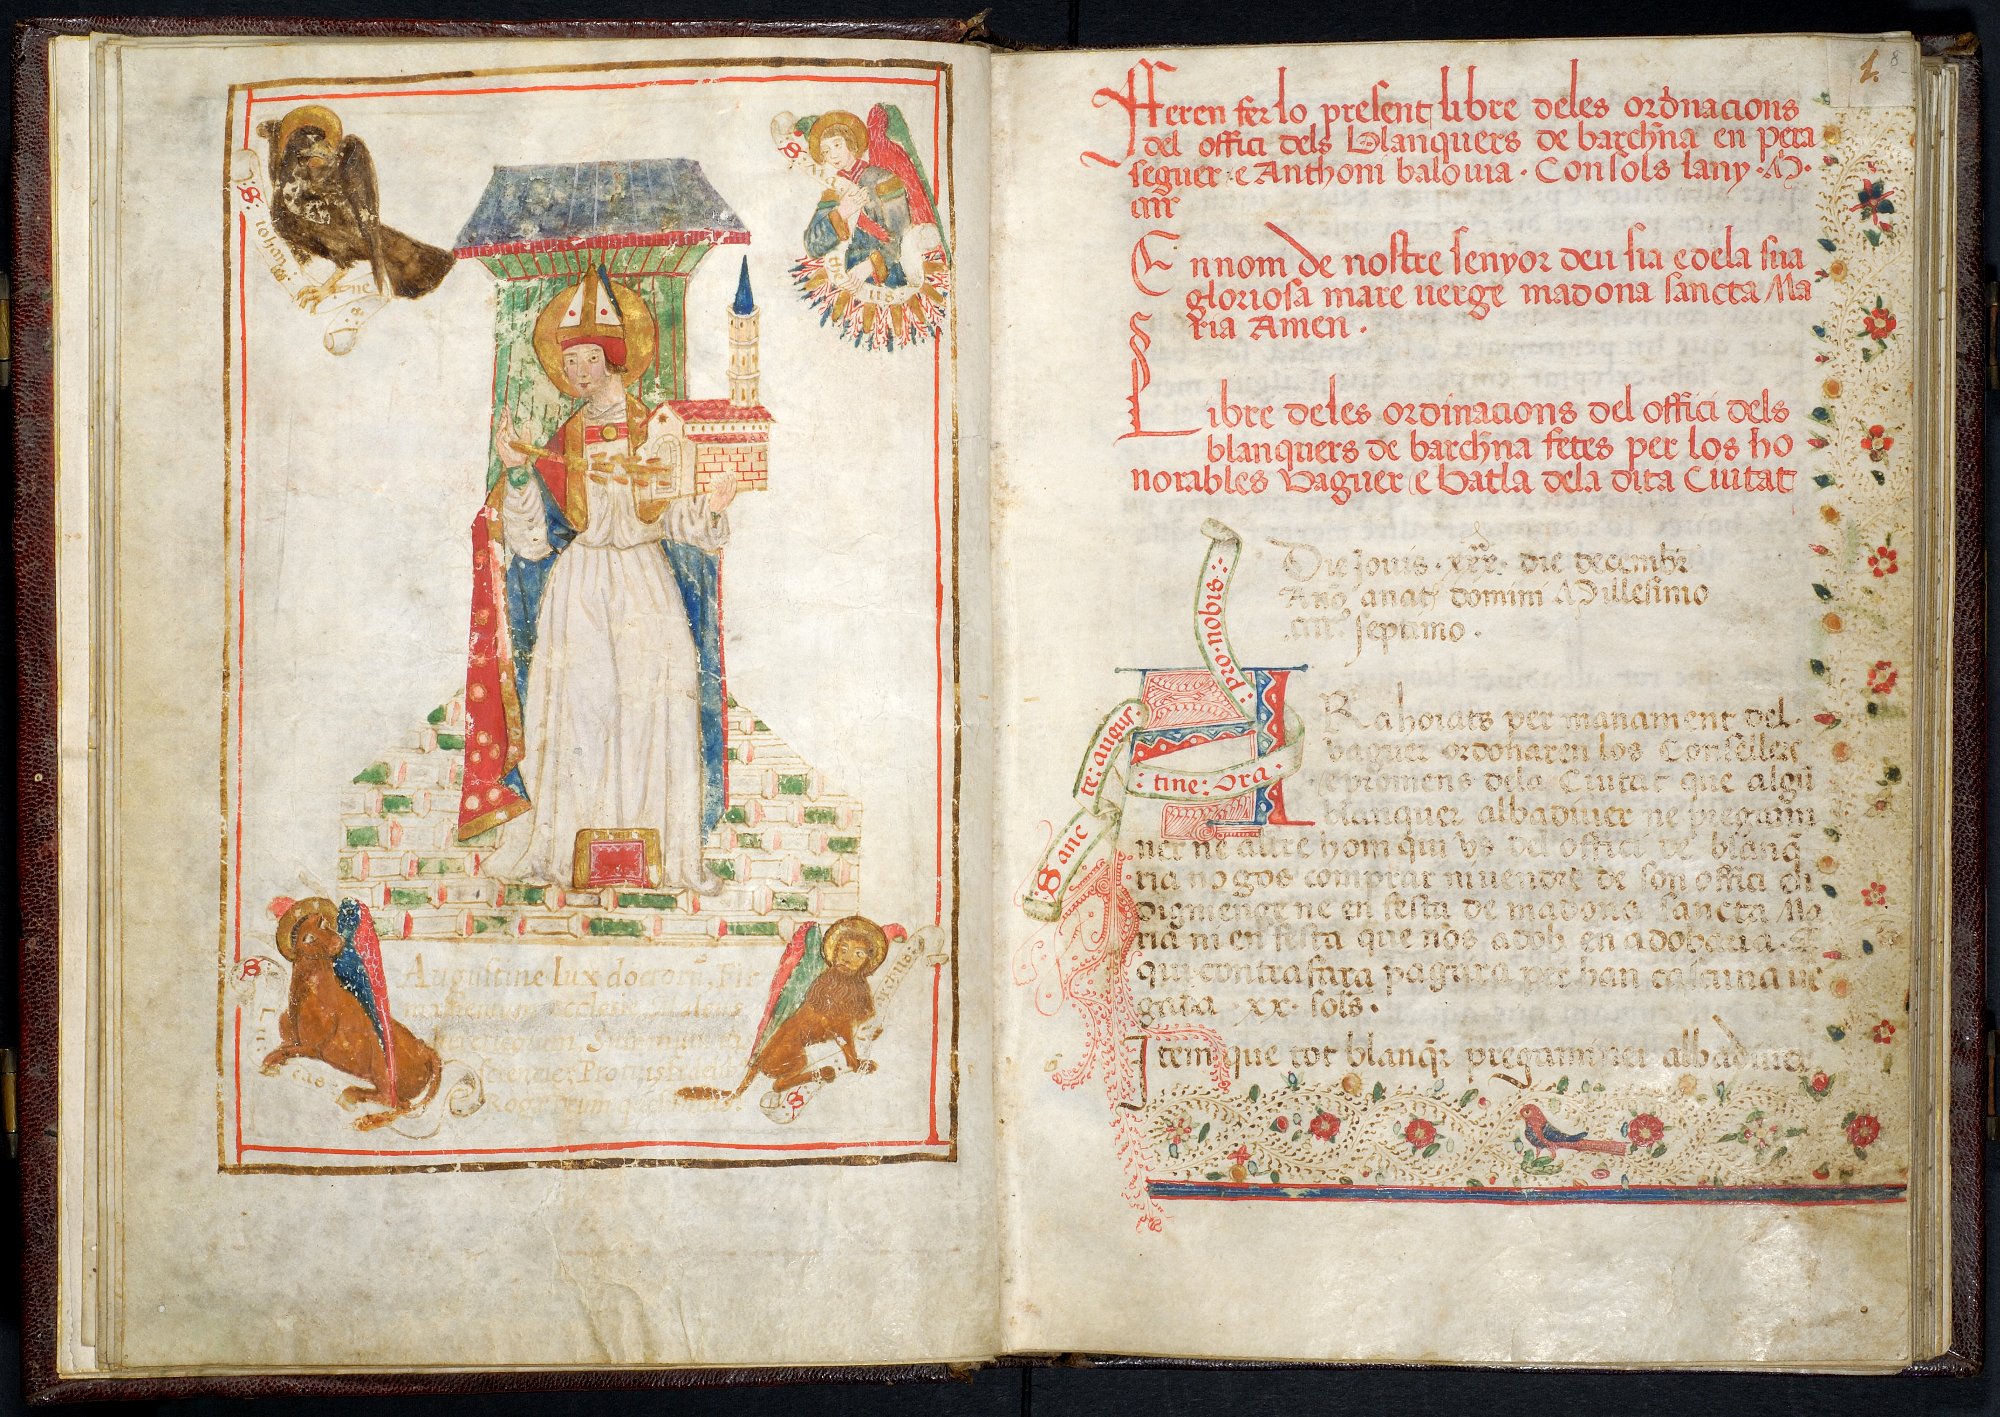 galeria_arxiu_medieval_i_modern_4_llibre_ordinacions_del_gremi_de_blanquers